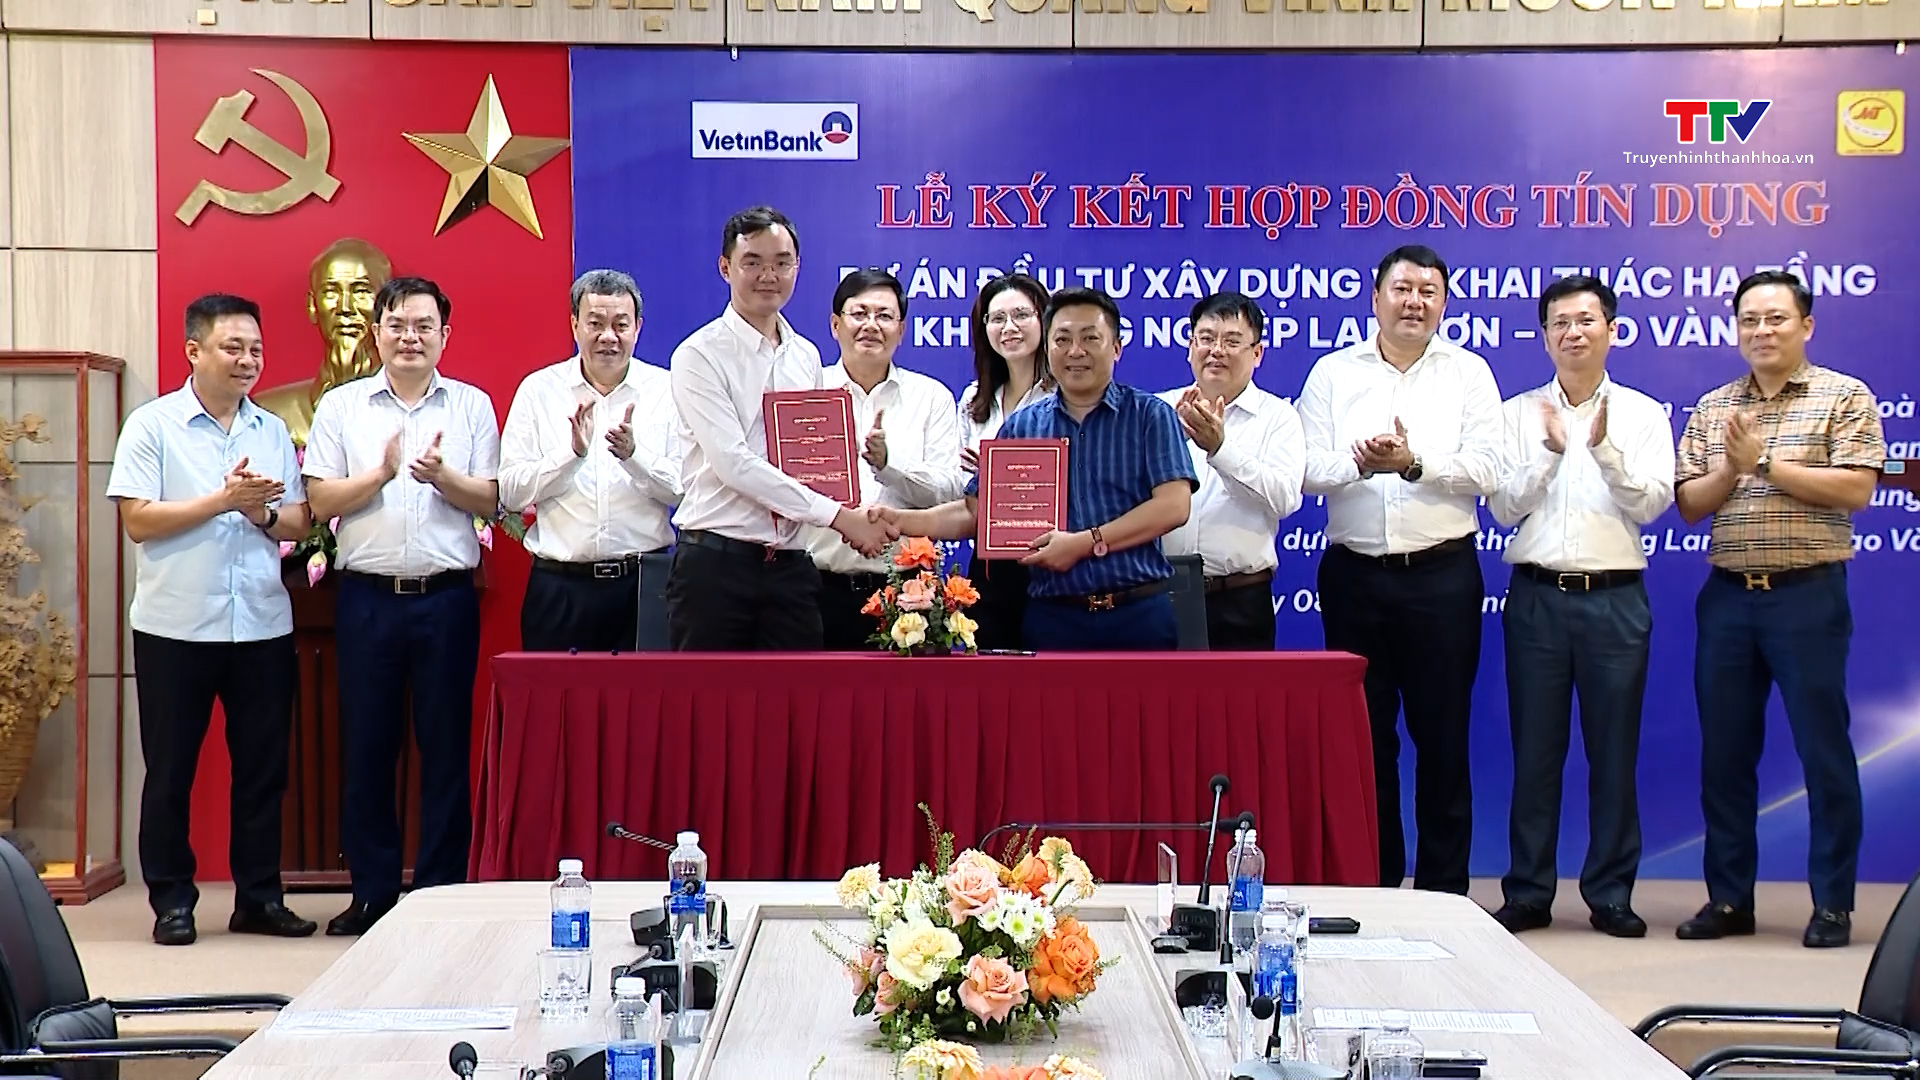 Ký kết Hợp đồng tín dụng Dự án đầu tư xây dựng và khai thác hạ tầng Khu công nghiệp Lam Sơn - Sao Vàng- Ảnh 1.